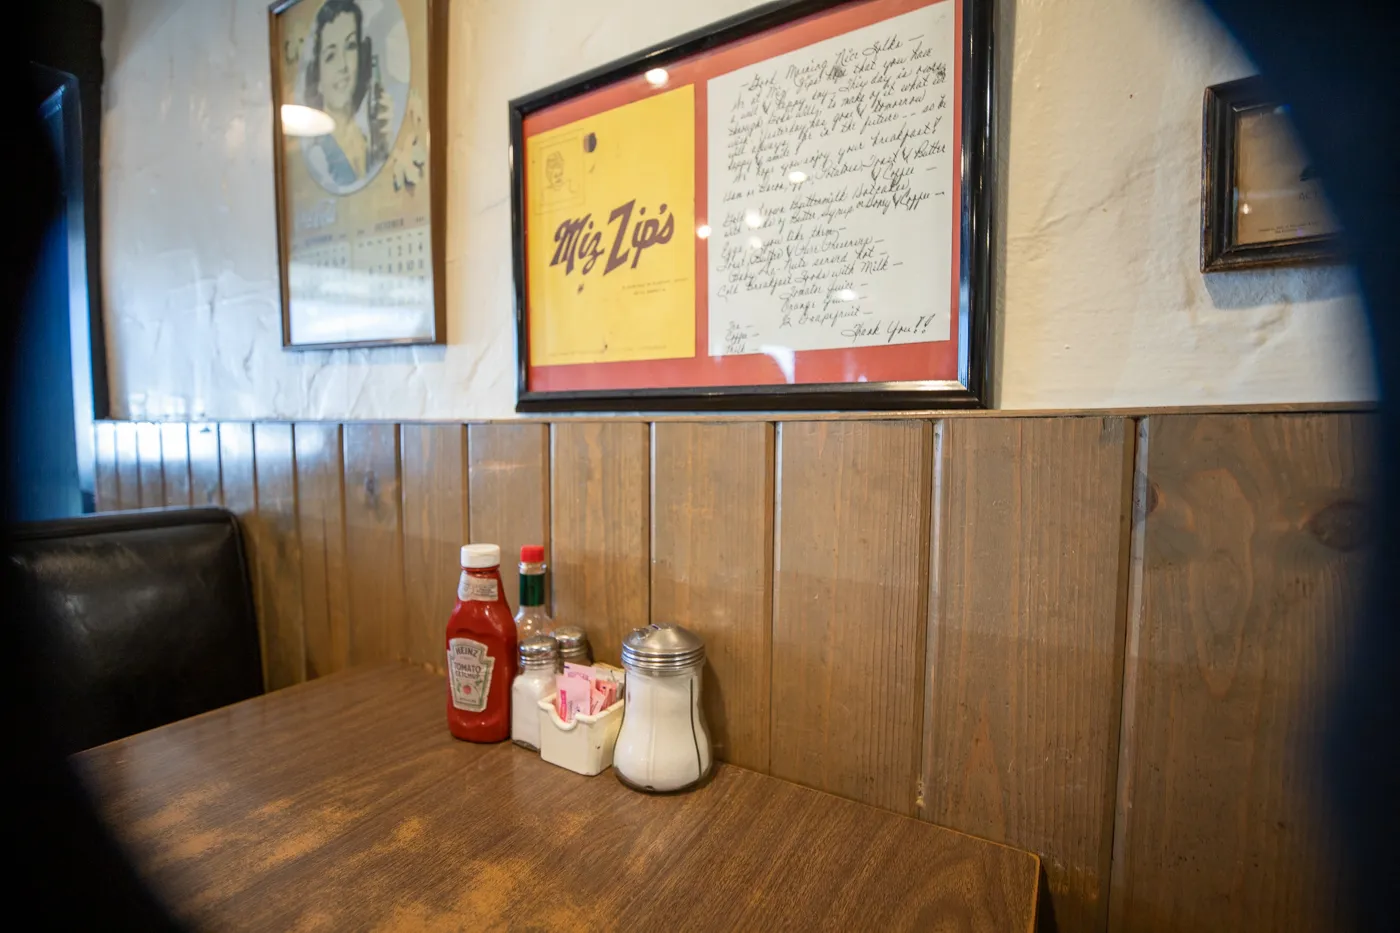 Miz Zip's in Flagstaff, Arizona Route 66 Diner and Restaurant